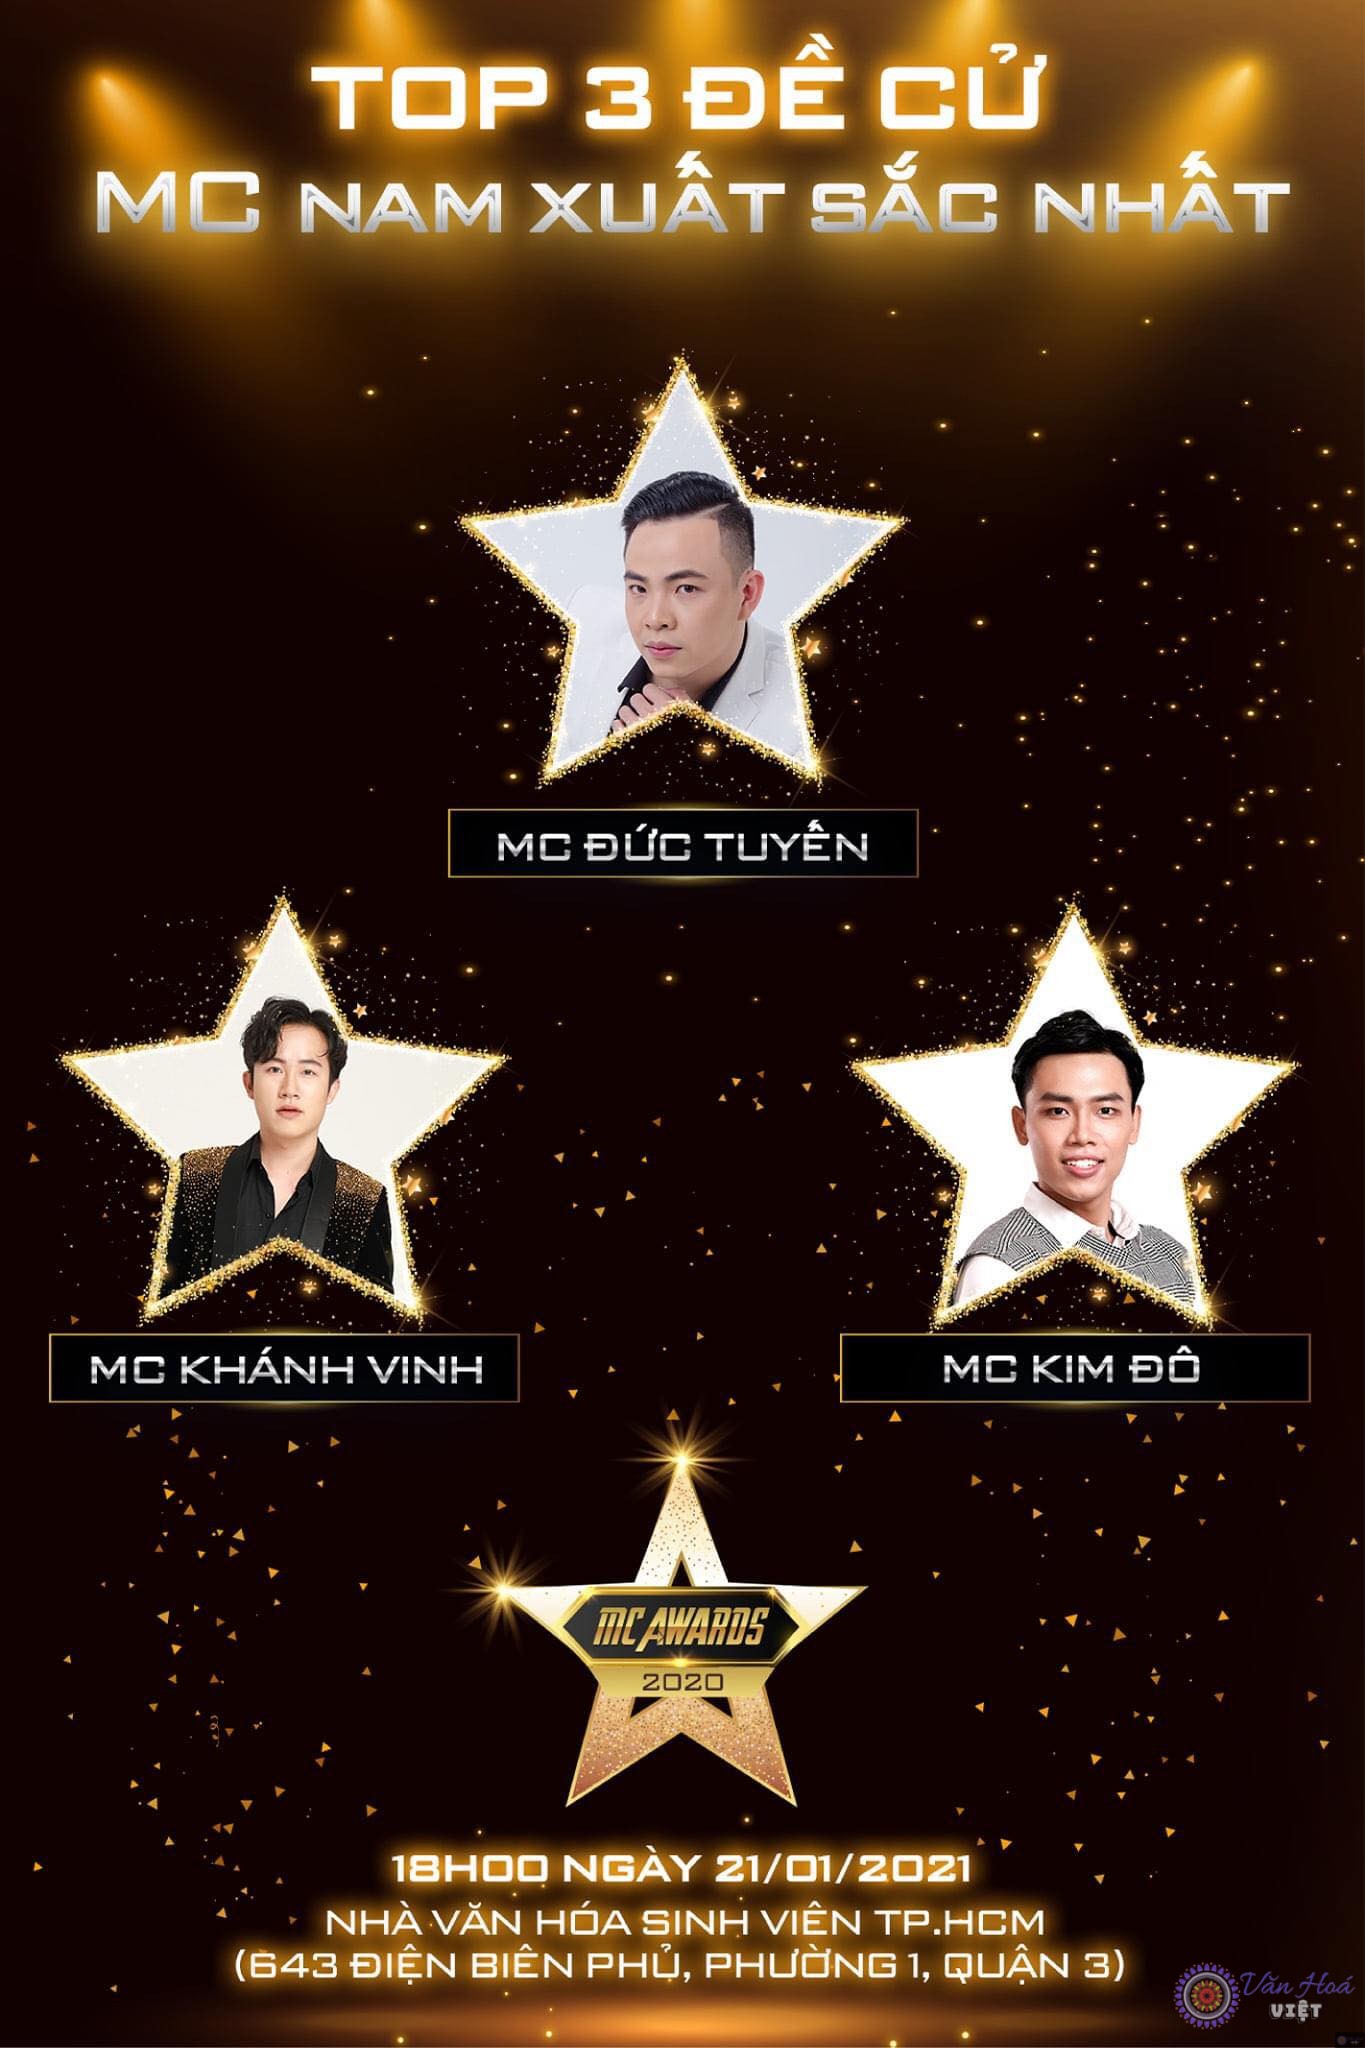 Khánh Vinh đã lọt vào vị trí Top 3 đề cử MC Nam xuất sắc nhất tại MC AWARDS 2020. Chương trình sẽ diễn ra vào ngày 21/01/2021 sắp tới. Hãy cùng chúng tôi chờ đón kết quả của người xứng đáng nhất